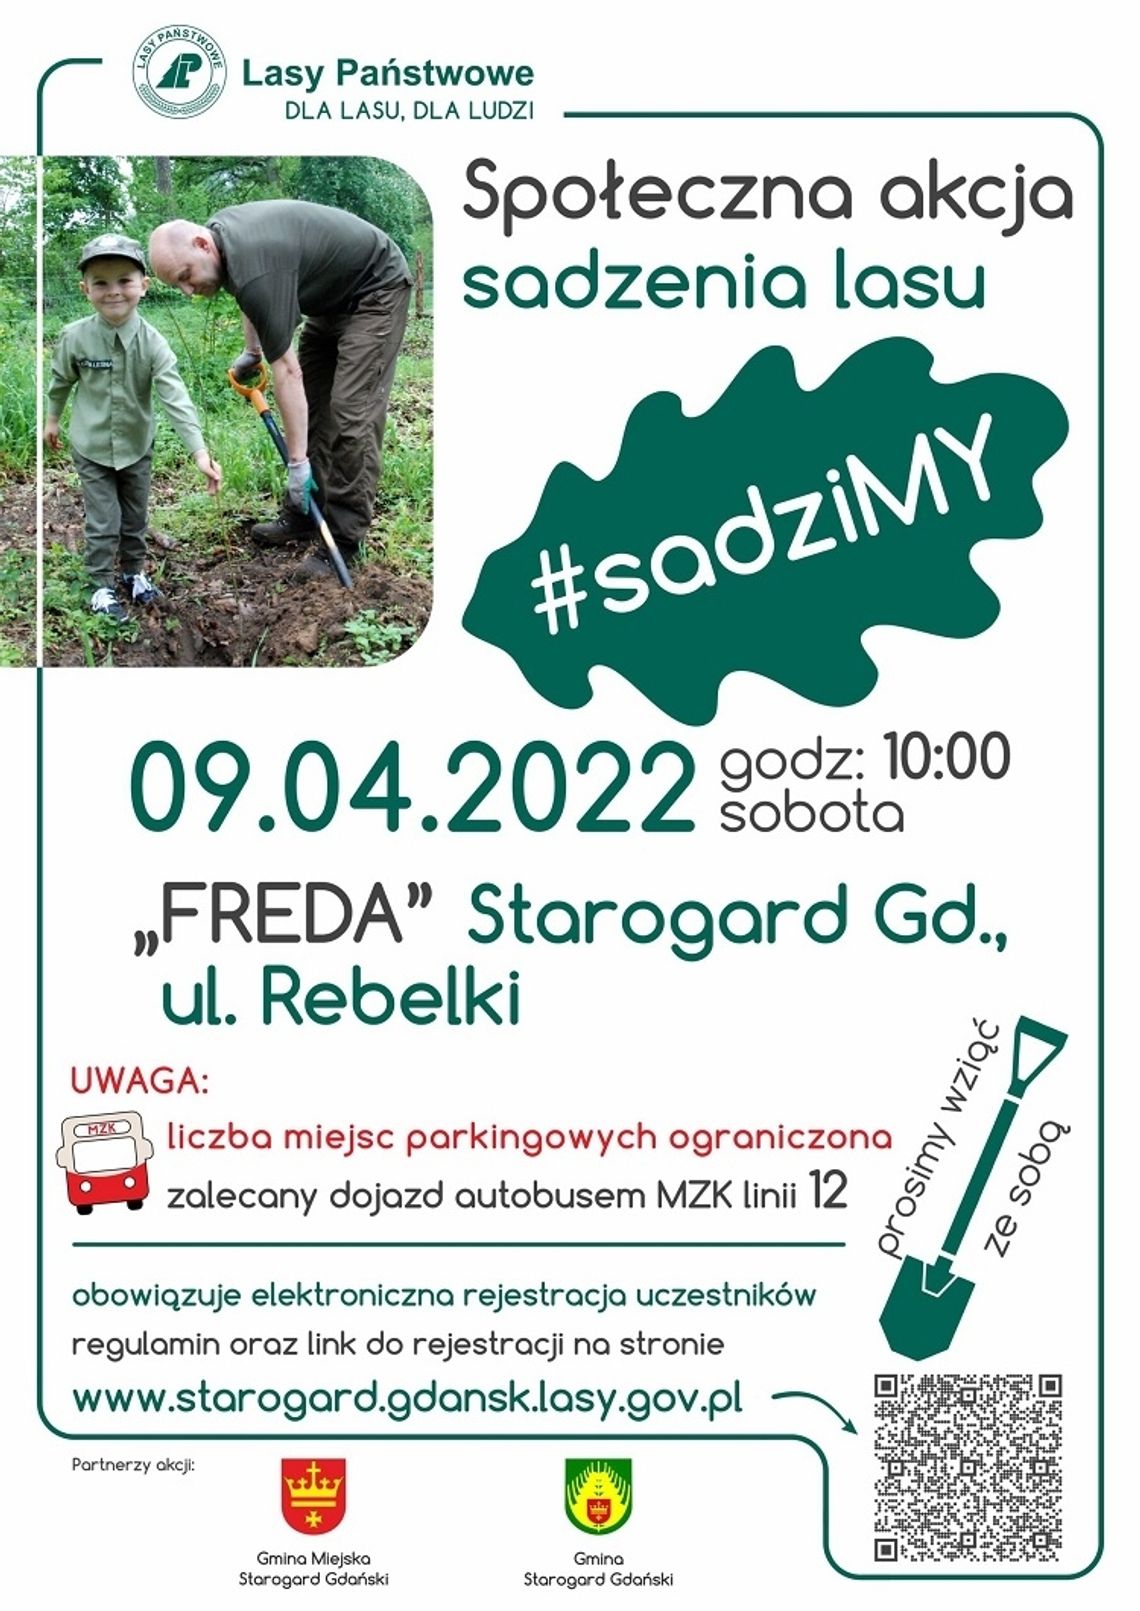 #sadziMY: Akcja wspólnego sadzenia lasu już 9 kwietnia. Na wydarzenie obowiązuje rejestracja